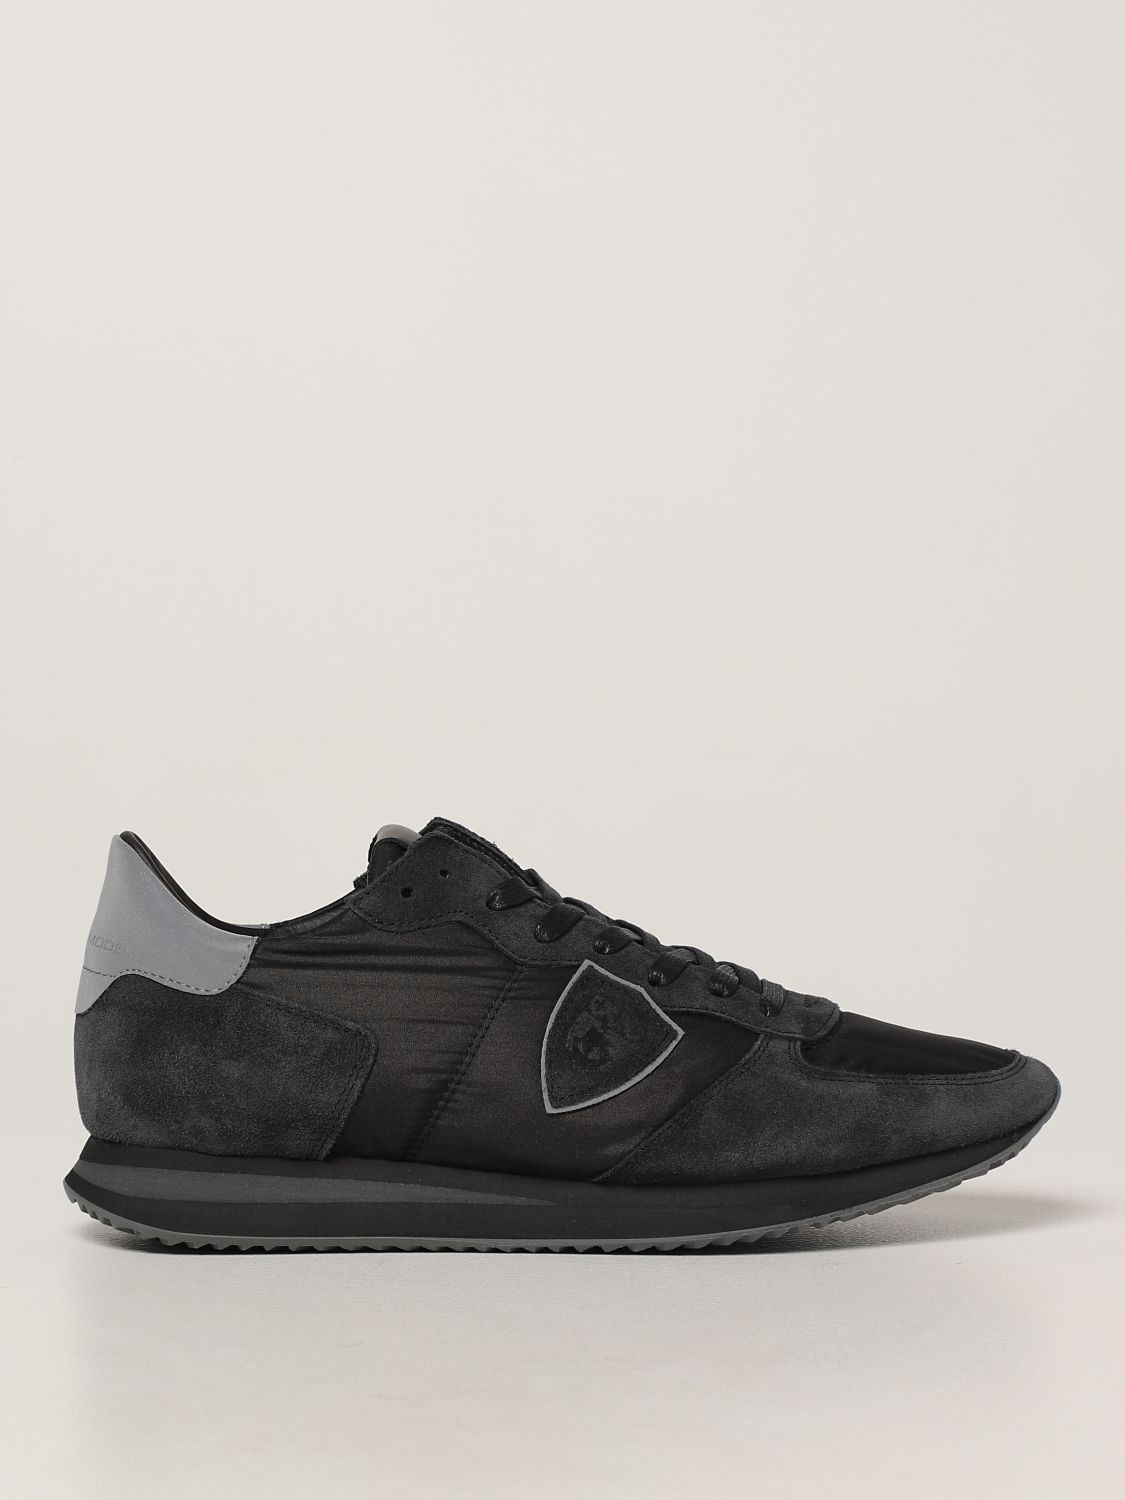 Sneakers Philippe Model: Sneakers Trpx Philippe Model in nylon e camoscio nero 1